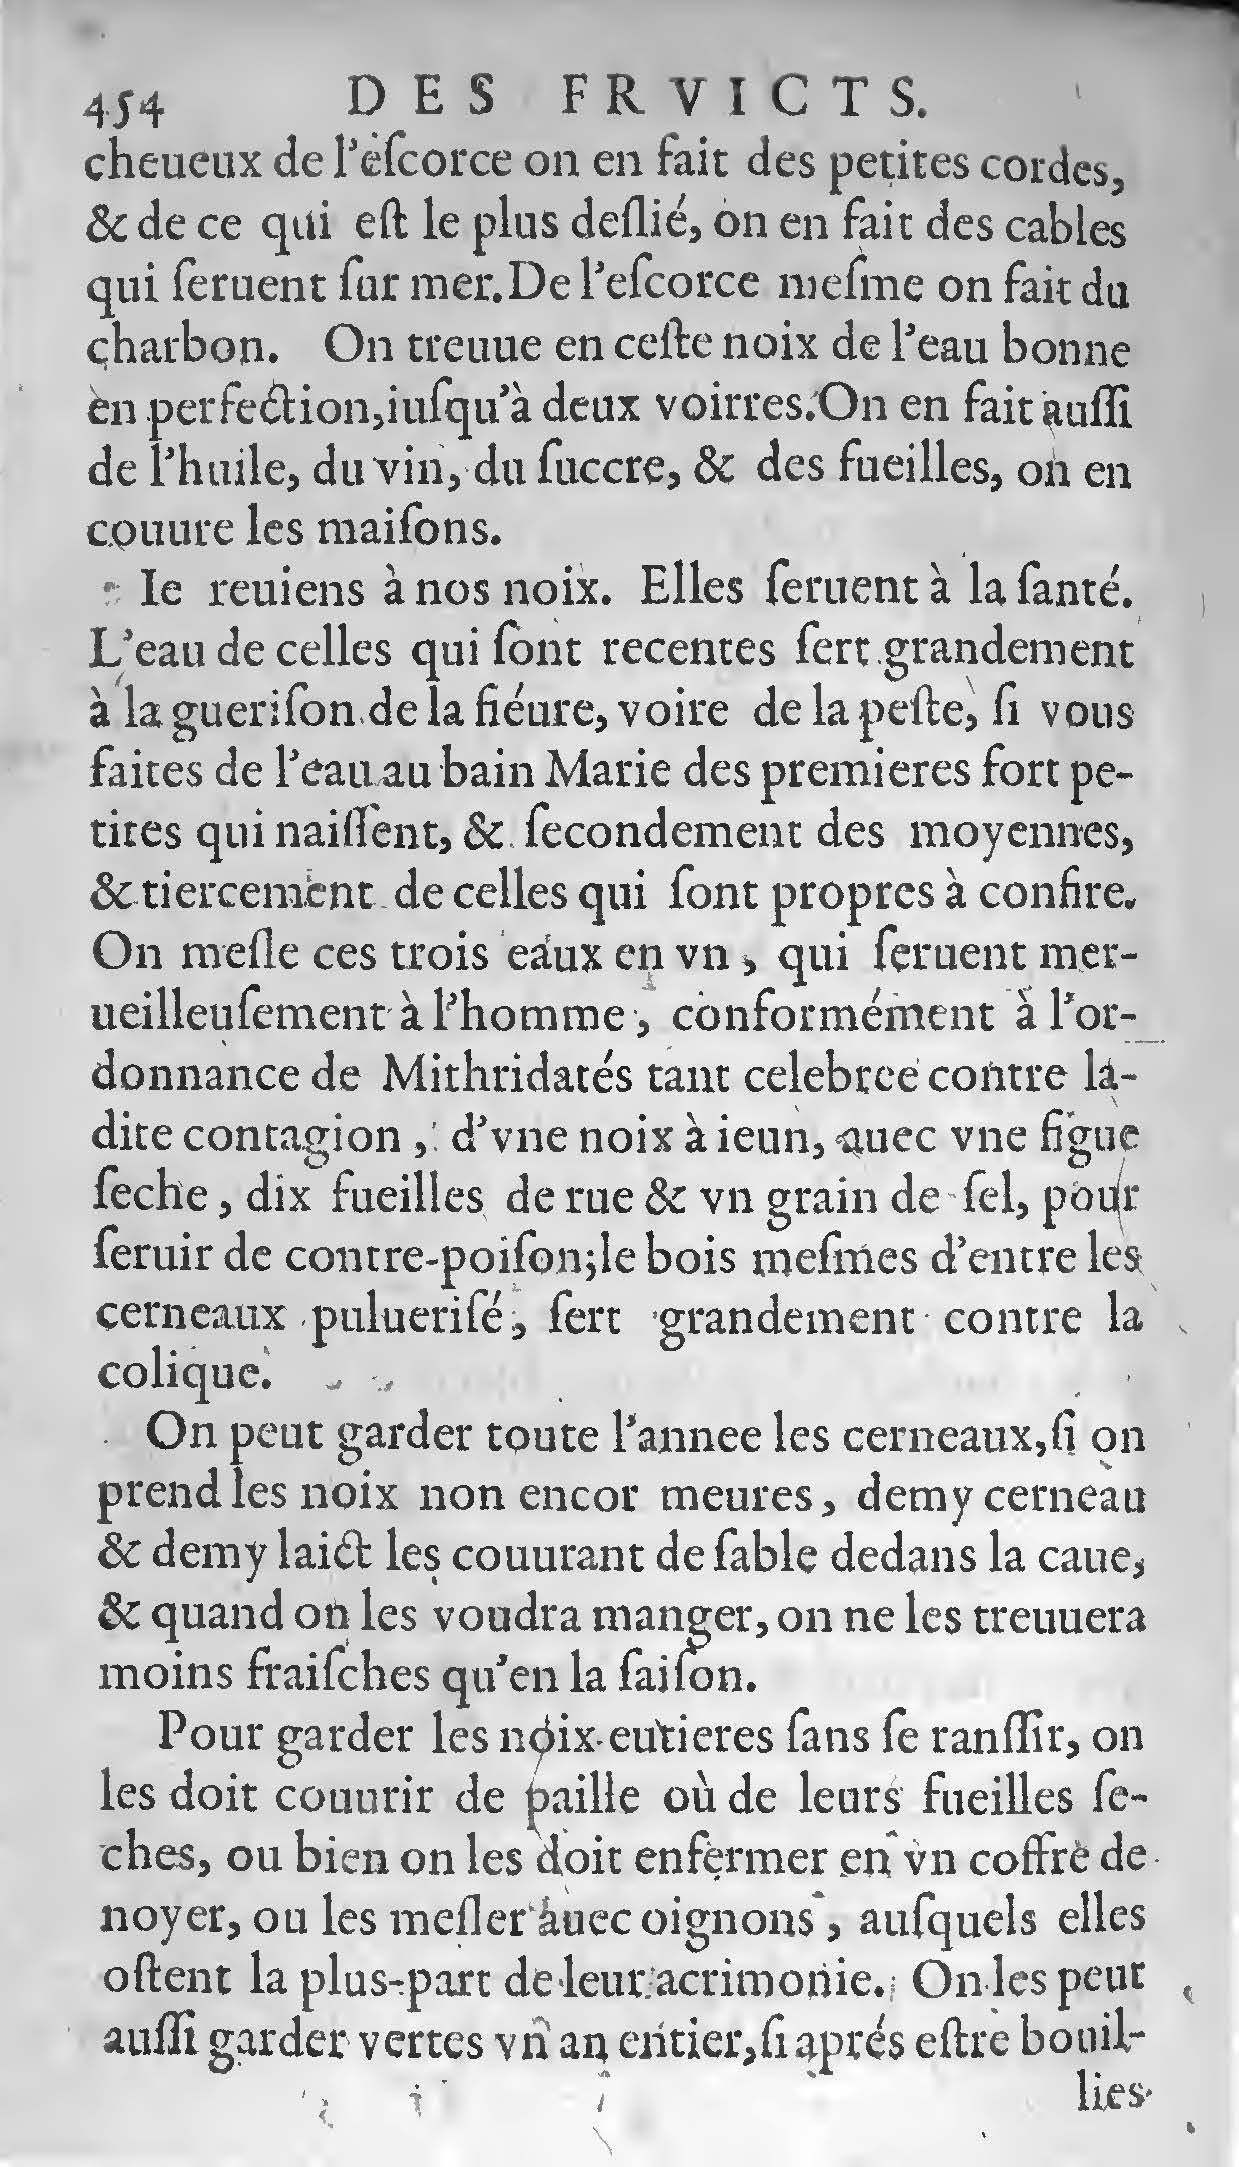 1607 Étienne Servain et Jean Antoine Huguetan - Trésor de santé ou ménage de la vie humaine - BIU Santé_Page_474.jpg